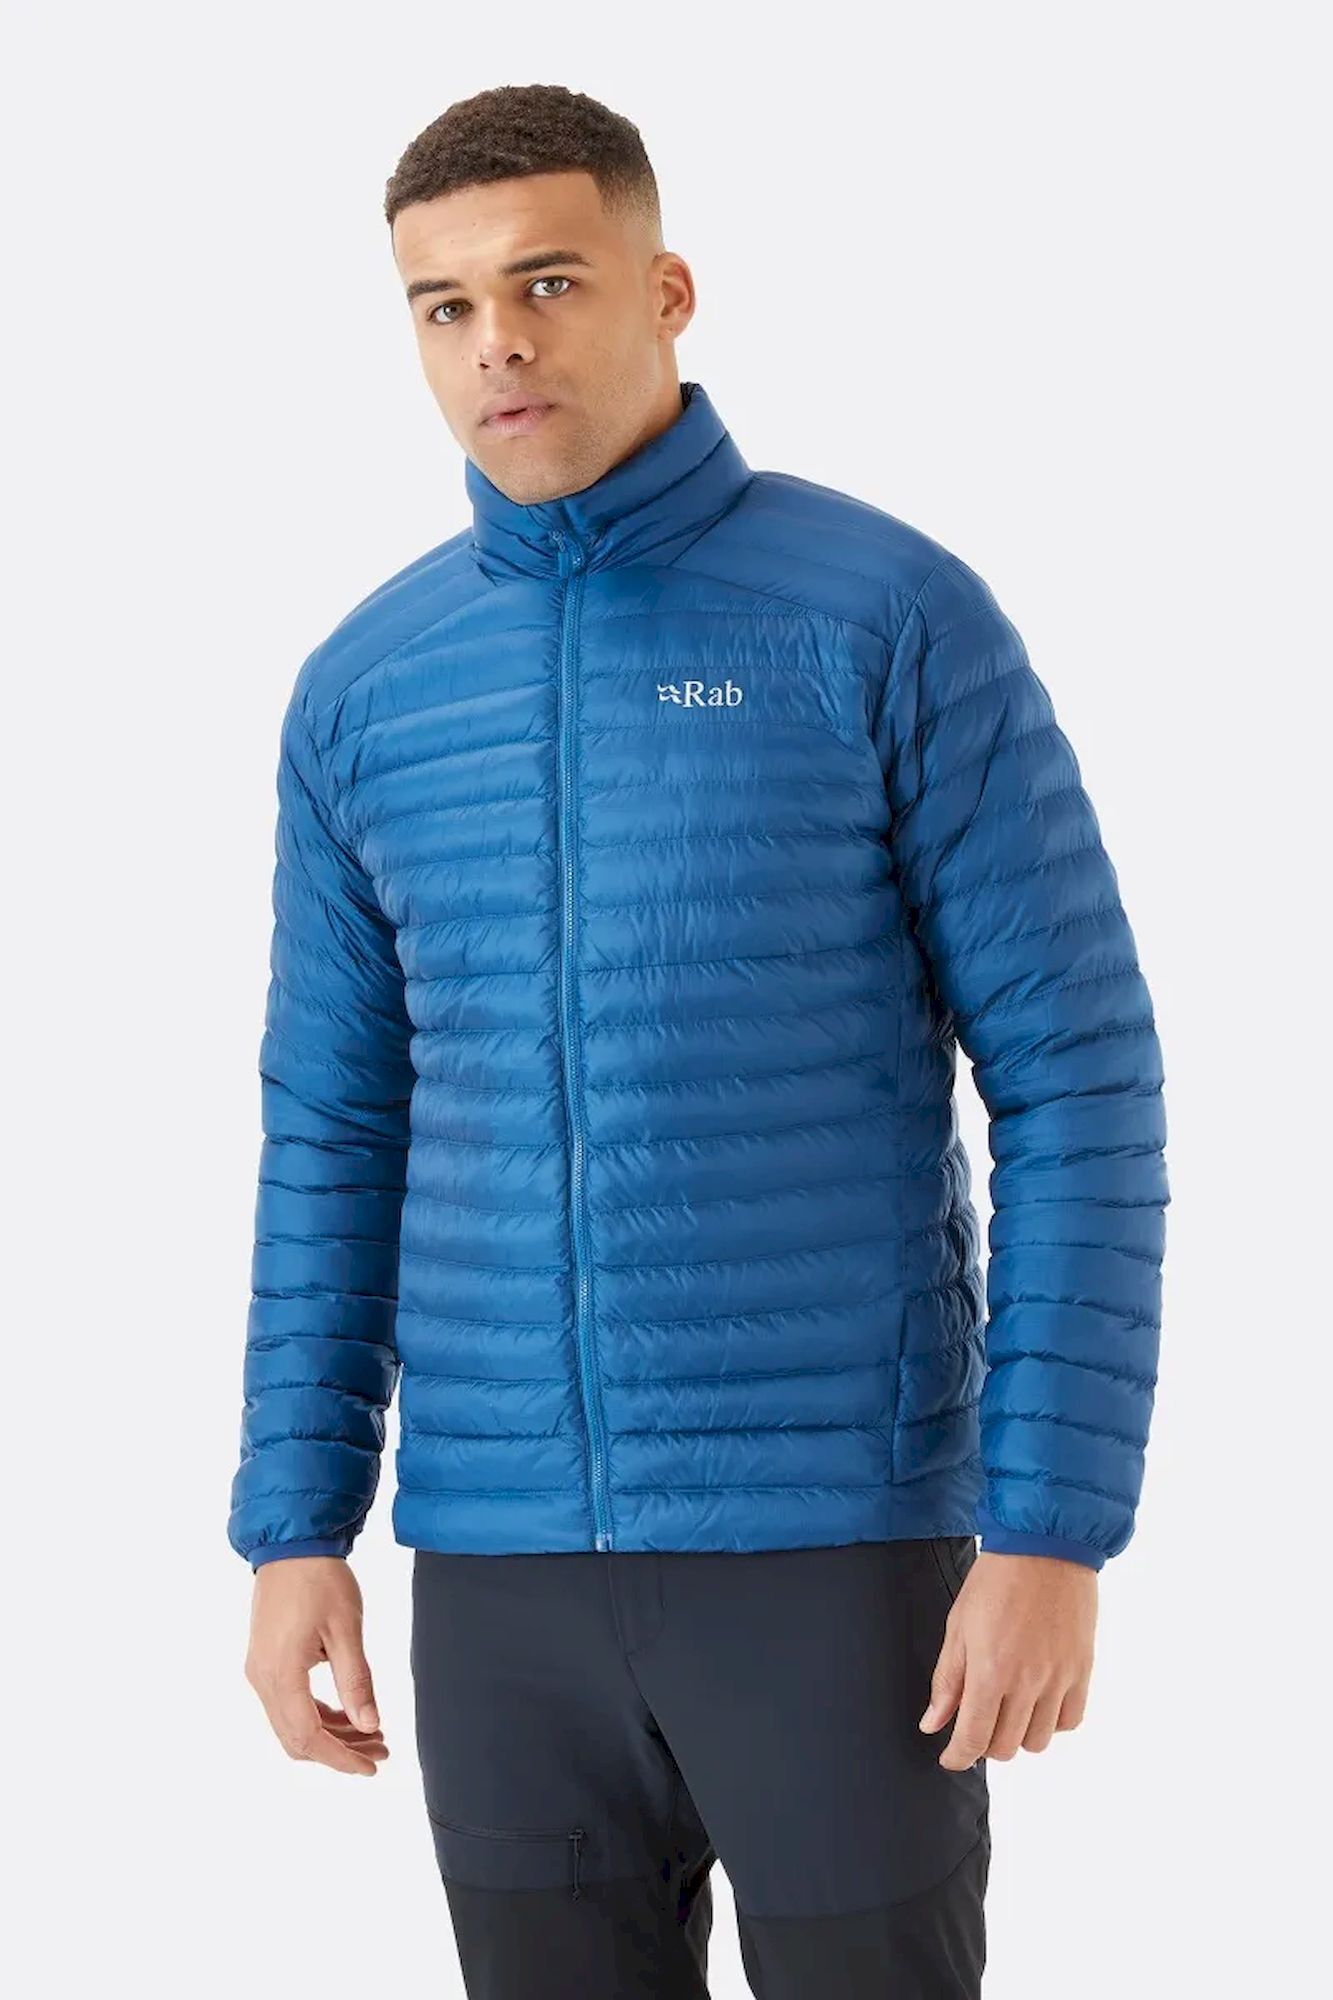 Rab Cirrus Jacket - Synthetic jacket - Men's